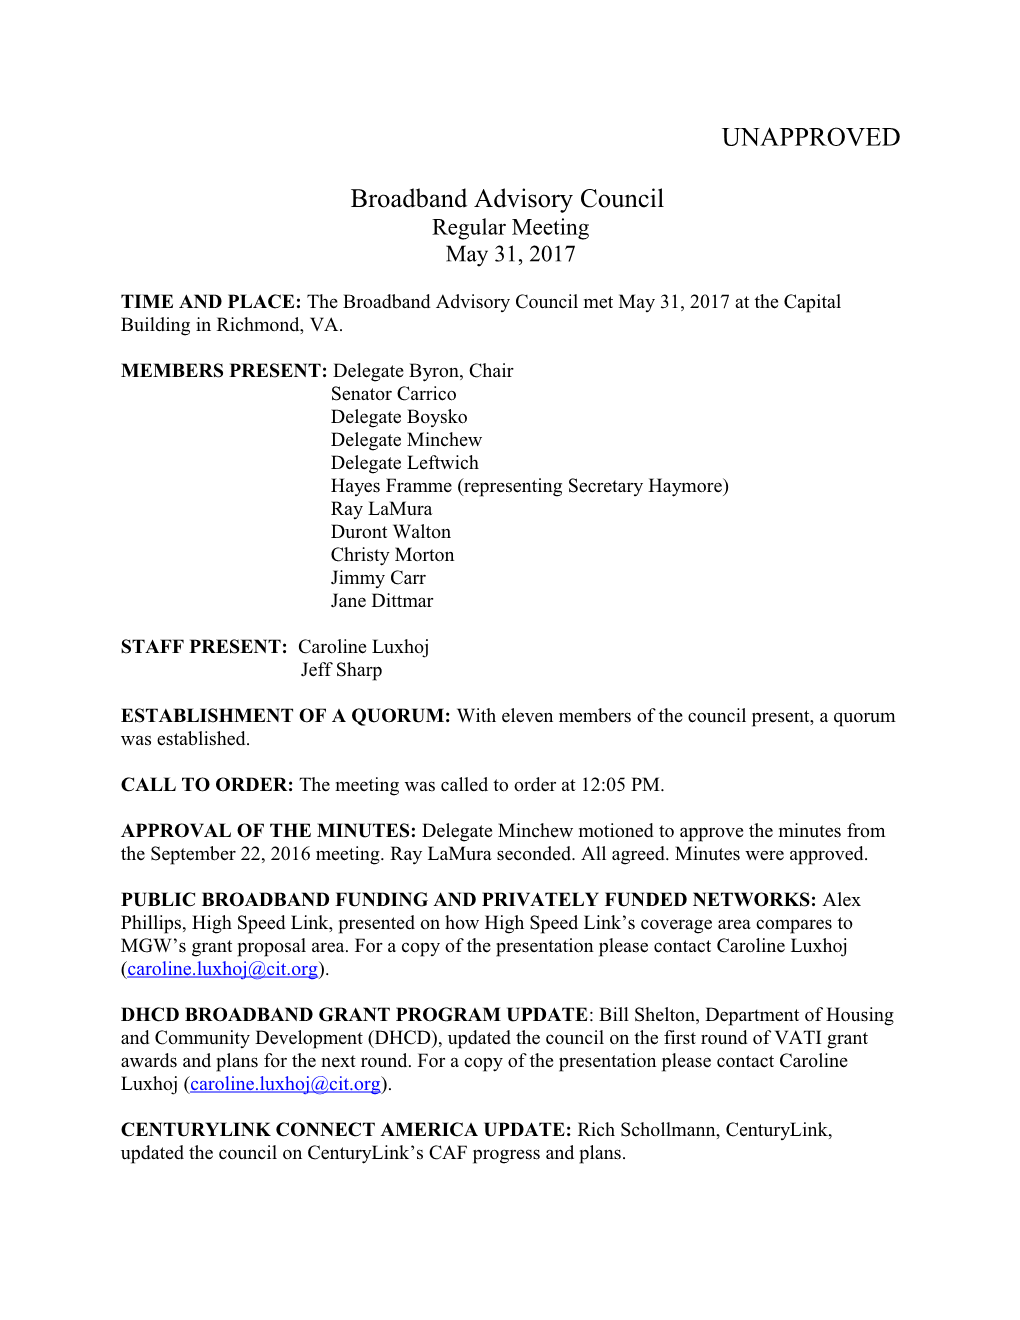 Broadband Advisory Council s1